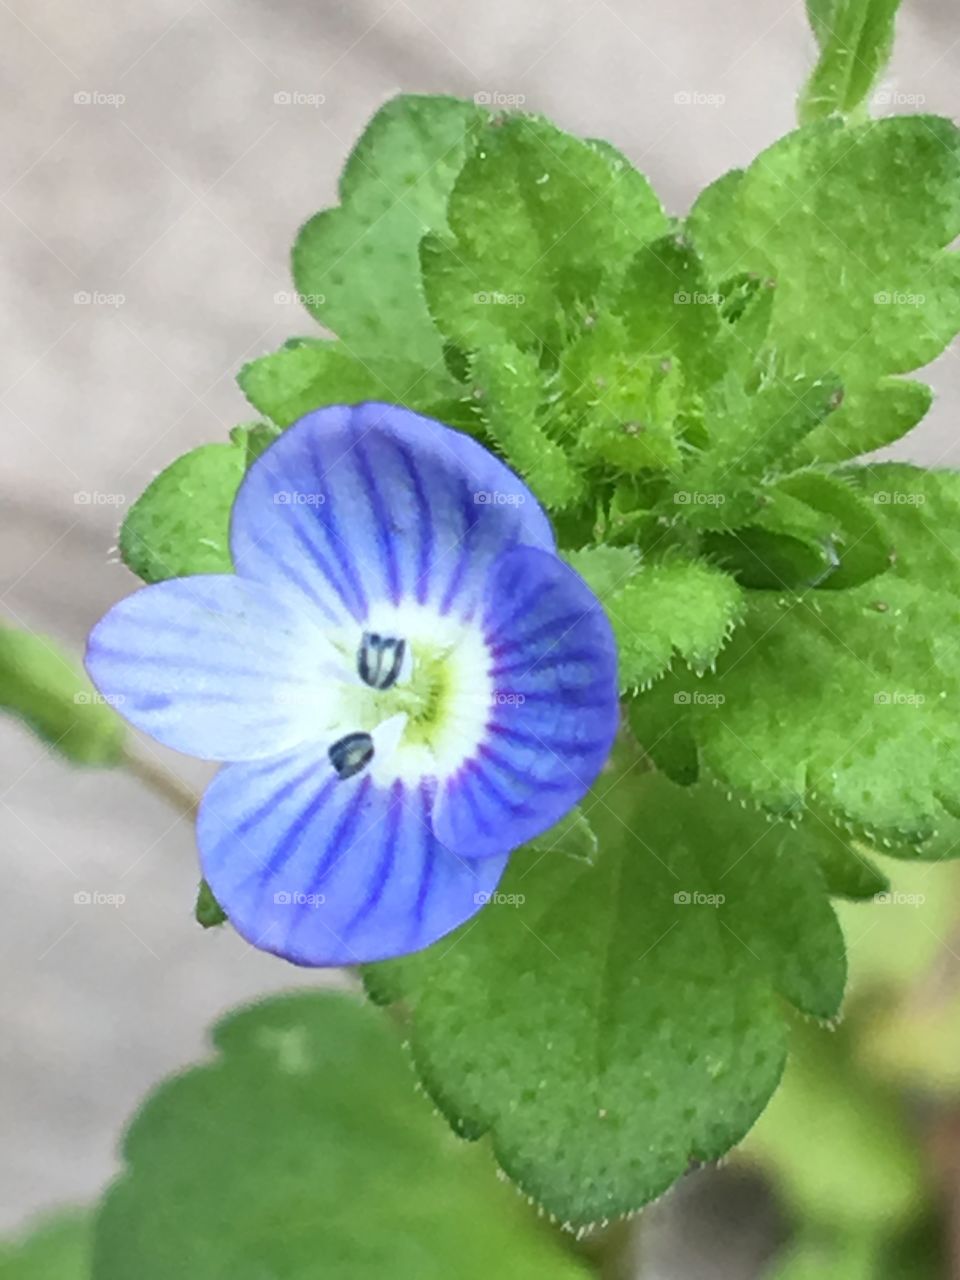 Small little flower